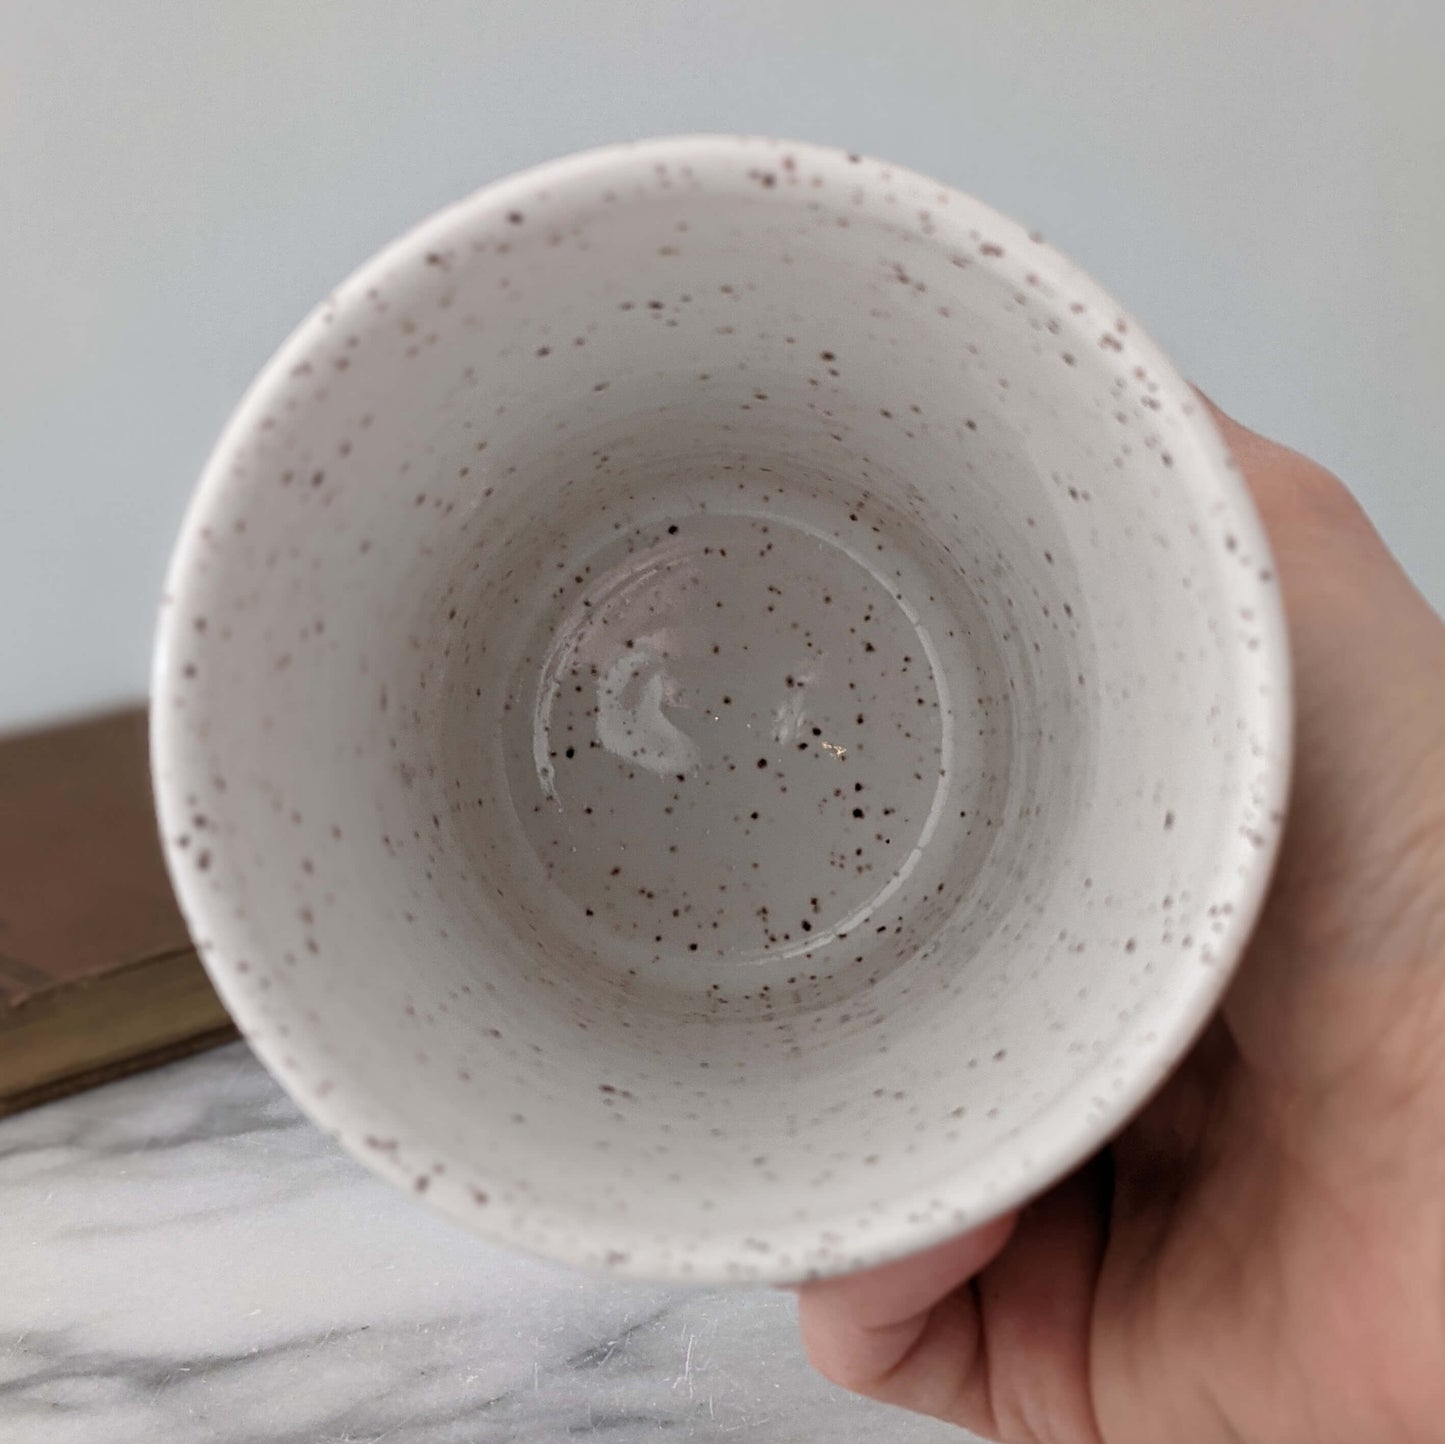 Speckled White Travel Mug